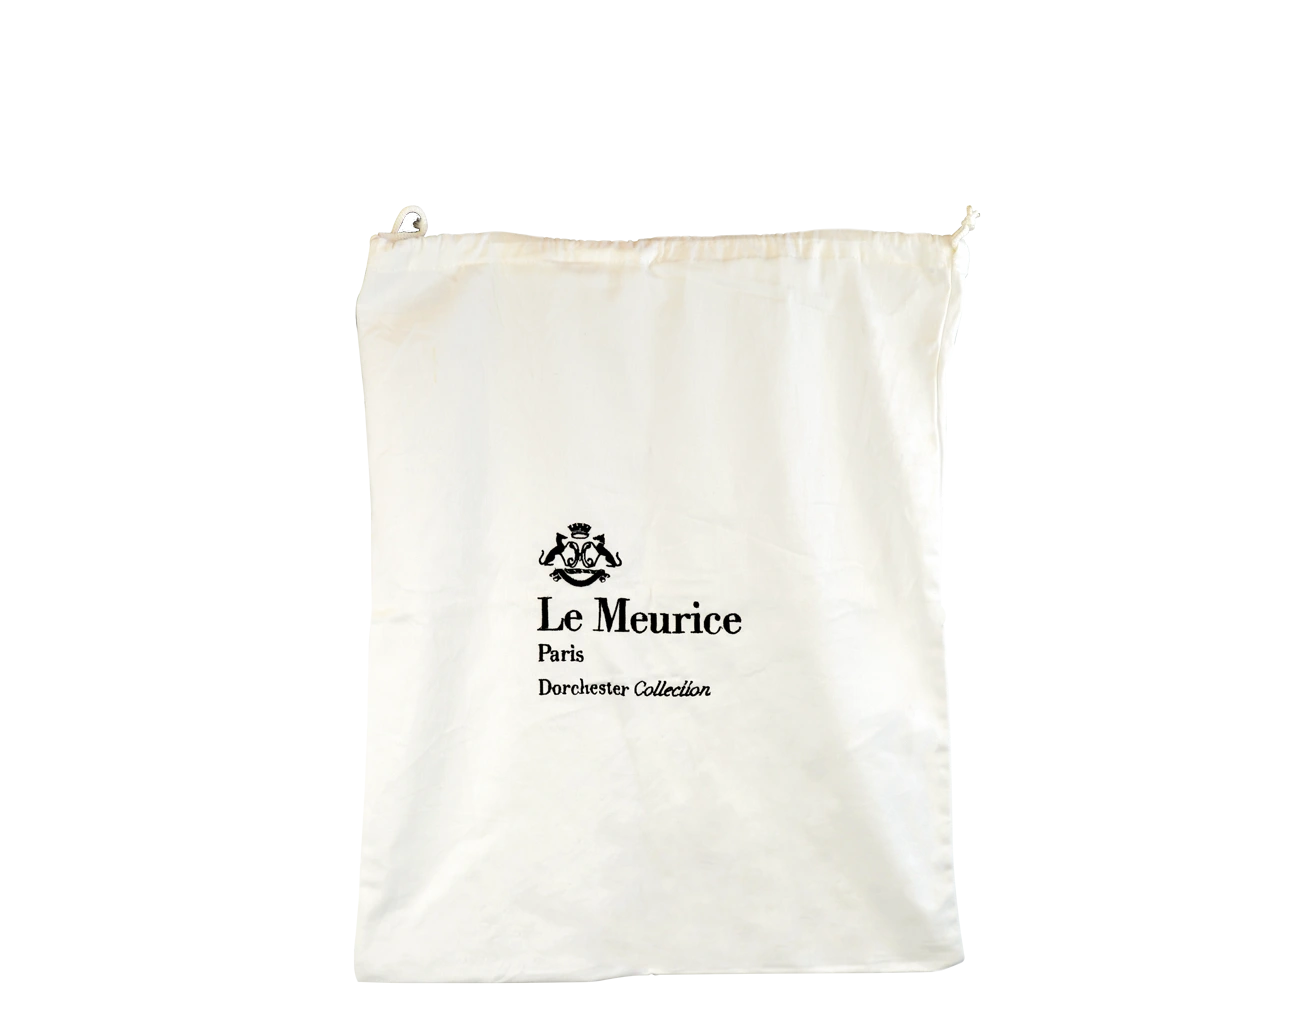 Pochon Personnalisé Luxe pour un Hôtel 5 étoiles. Packaging prestigieux & éco-responsable de part sa finition en coton GOTS, ce pochon a été conçu en 160 gr/m².